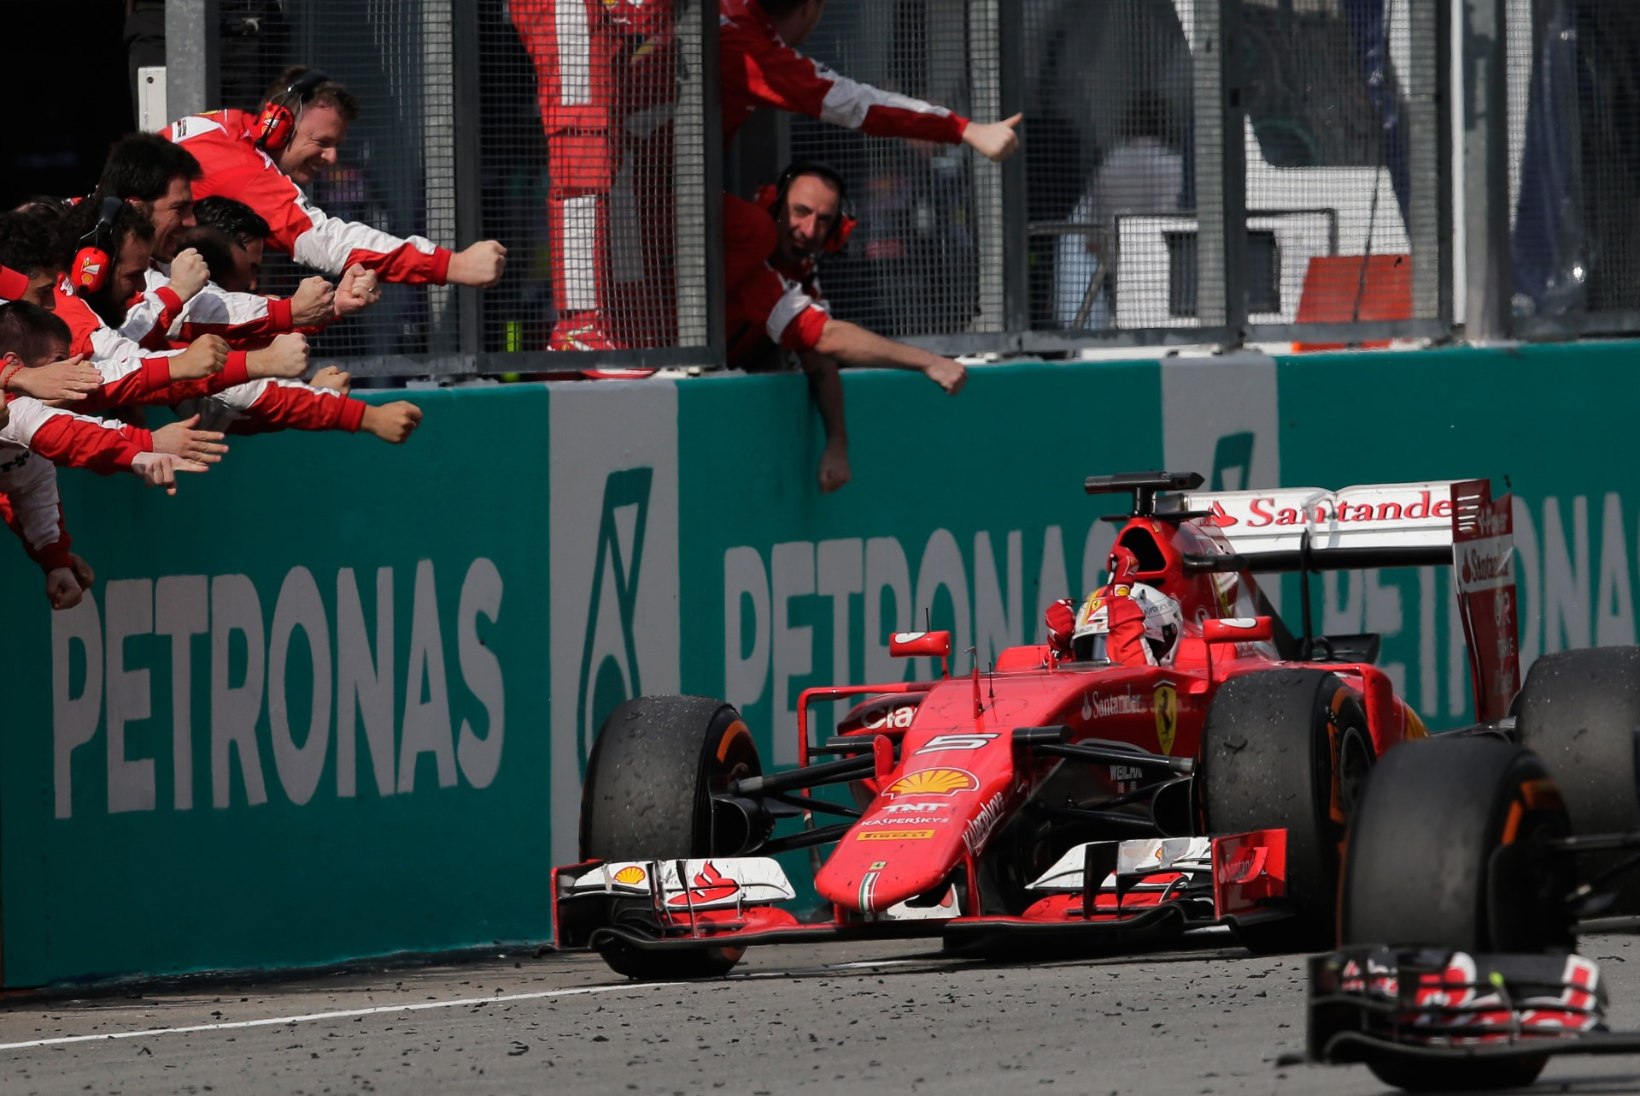 Ferrari boss möönab: F1 peab muutuma kõigile tiimidele taskukohasemaks